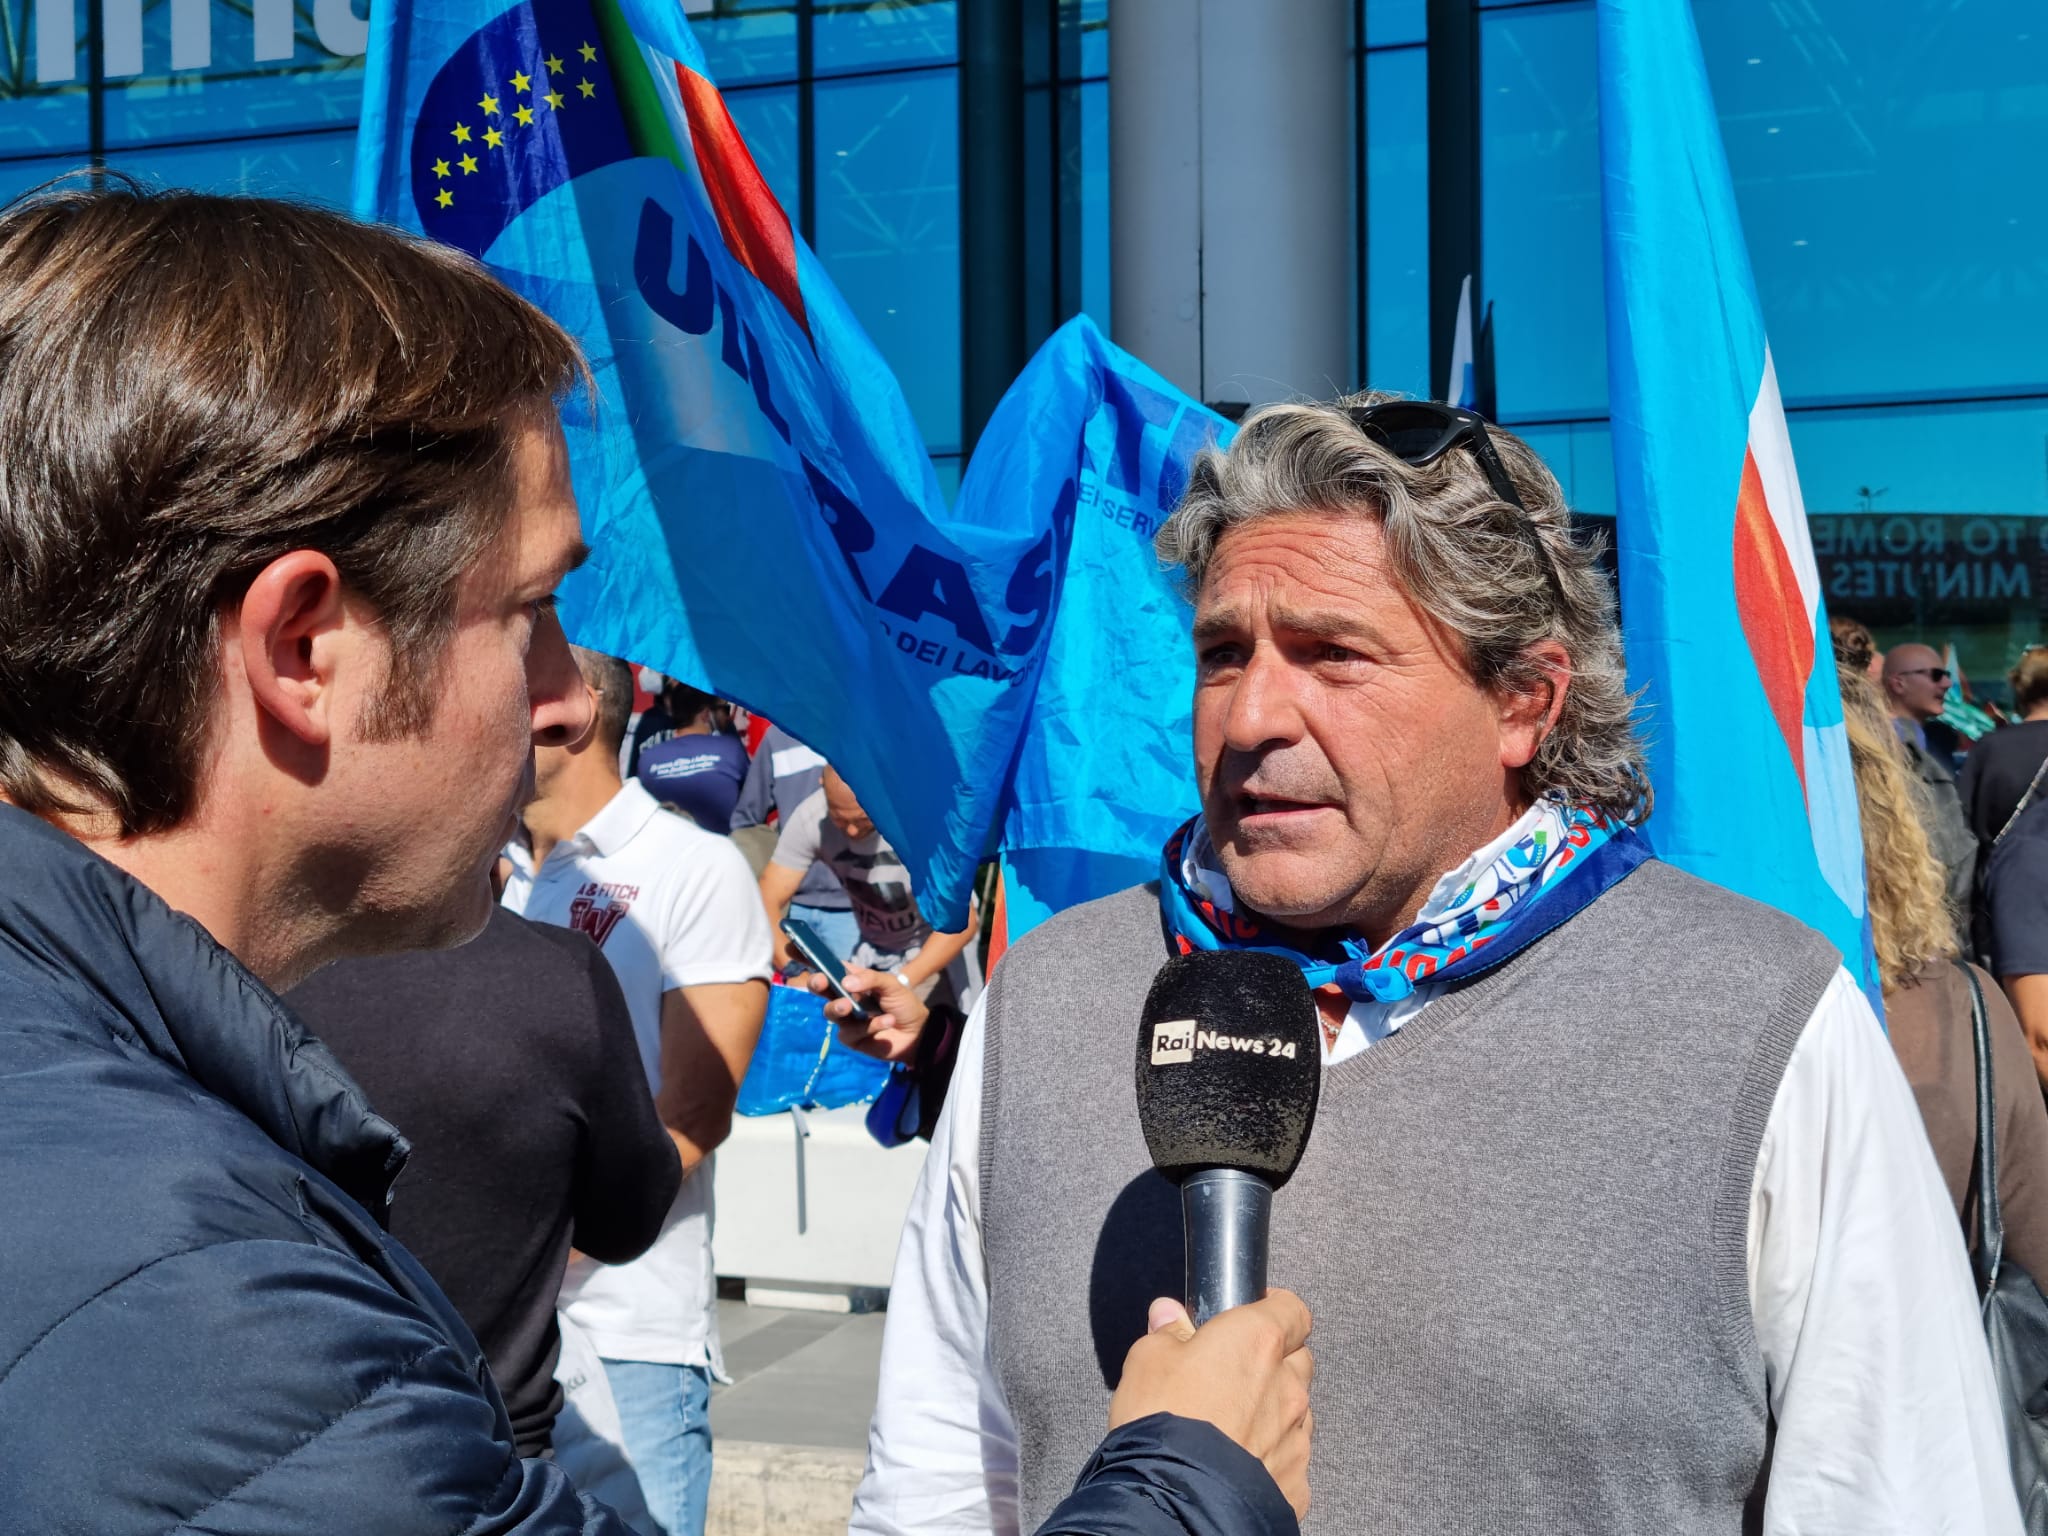 Il Segretario Nazionale, Ivan Viglietti, ai microfoni di Rai news 24 durante la mobilitazione per la Vertenza Alitalia-ITA [VIDEO]